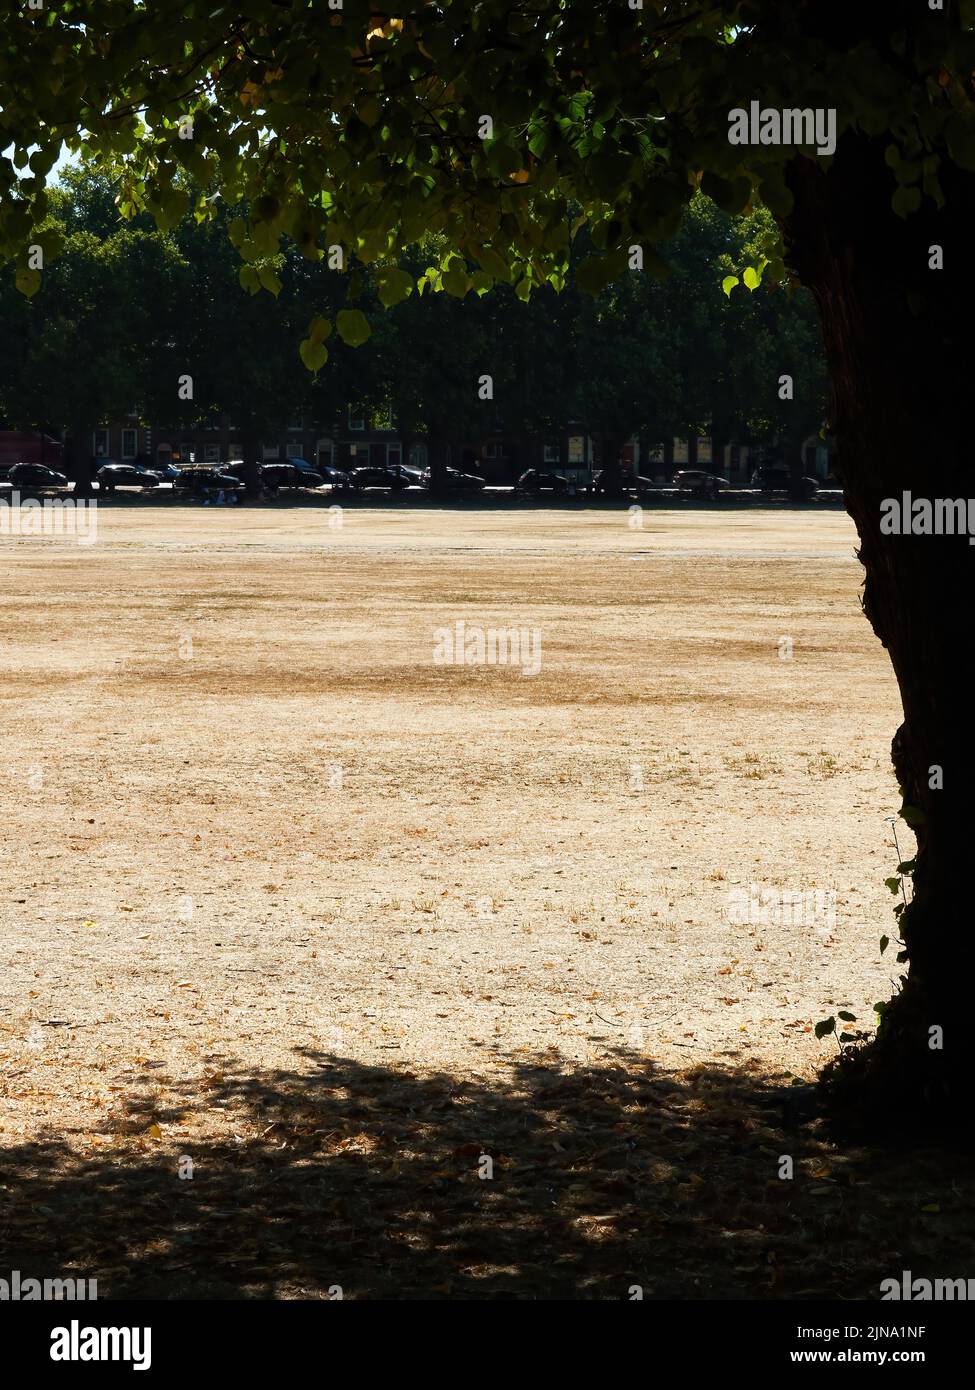 Le parc Richmond Green, normalement verdoyant et accueillant, s'est transformé en un bol à poussière hostile par des températures records et des mois sans pluie. Banque D'Images